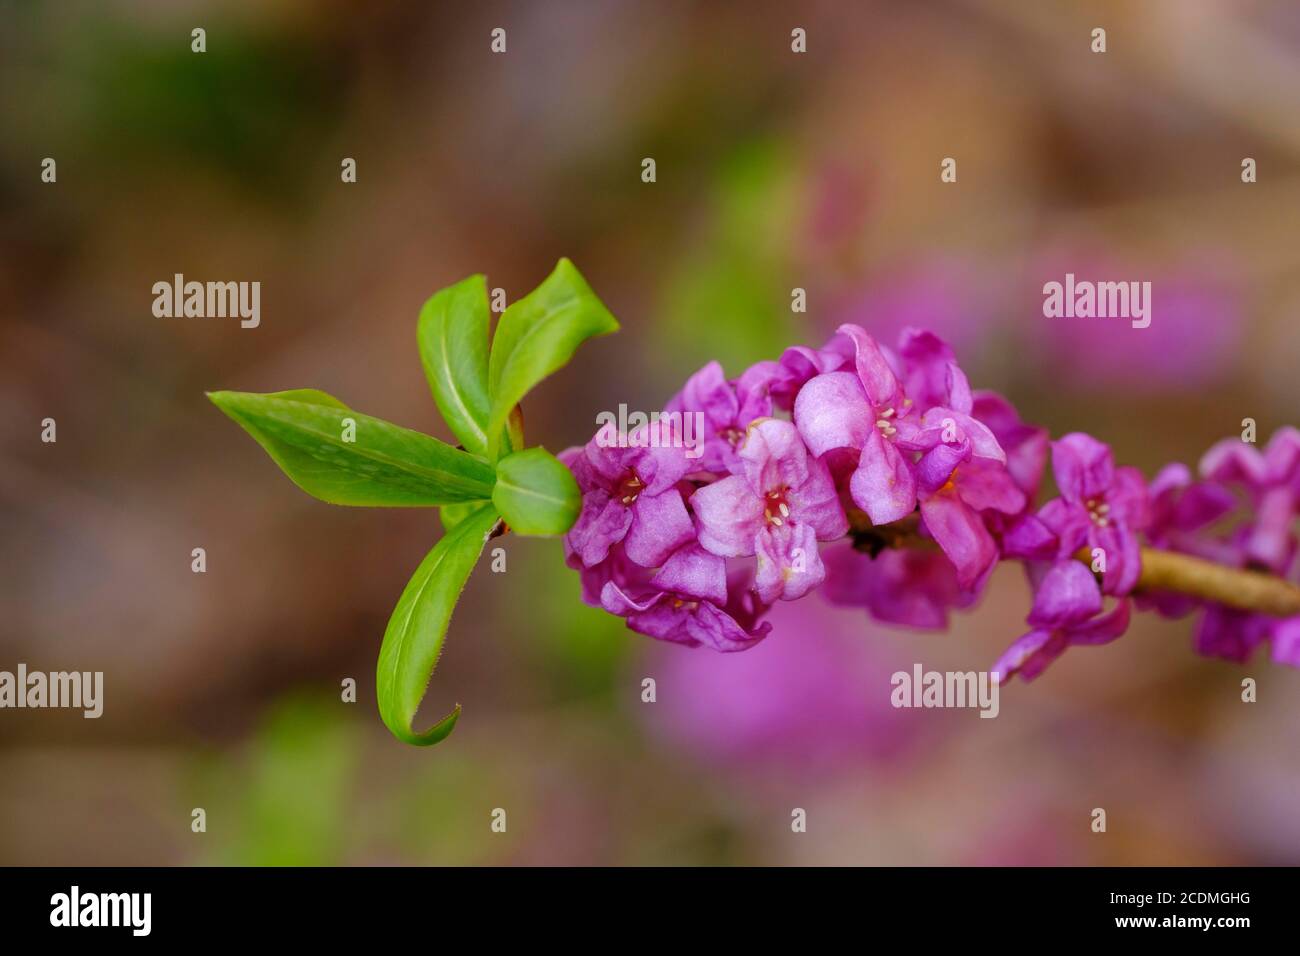 Echte daphne (Daphne mezereum), Blumen und Blätter, Isarauen bei Geretsried, Oberbayern, Bayern, Deutschland Stockfoto